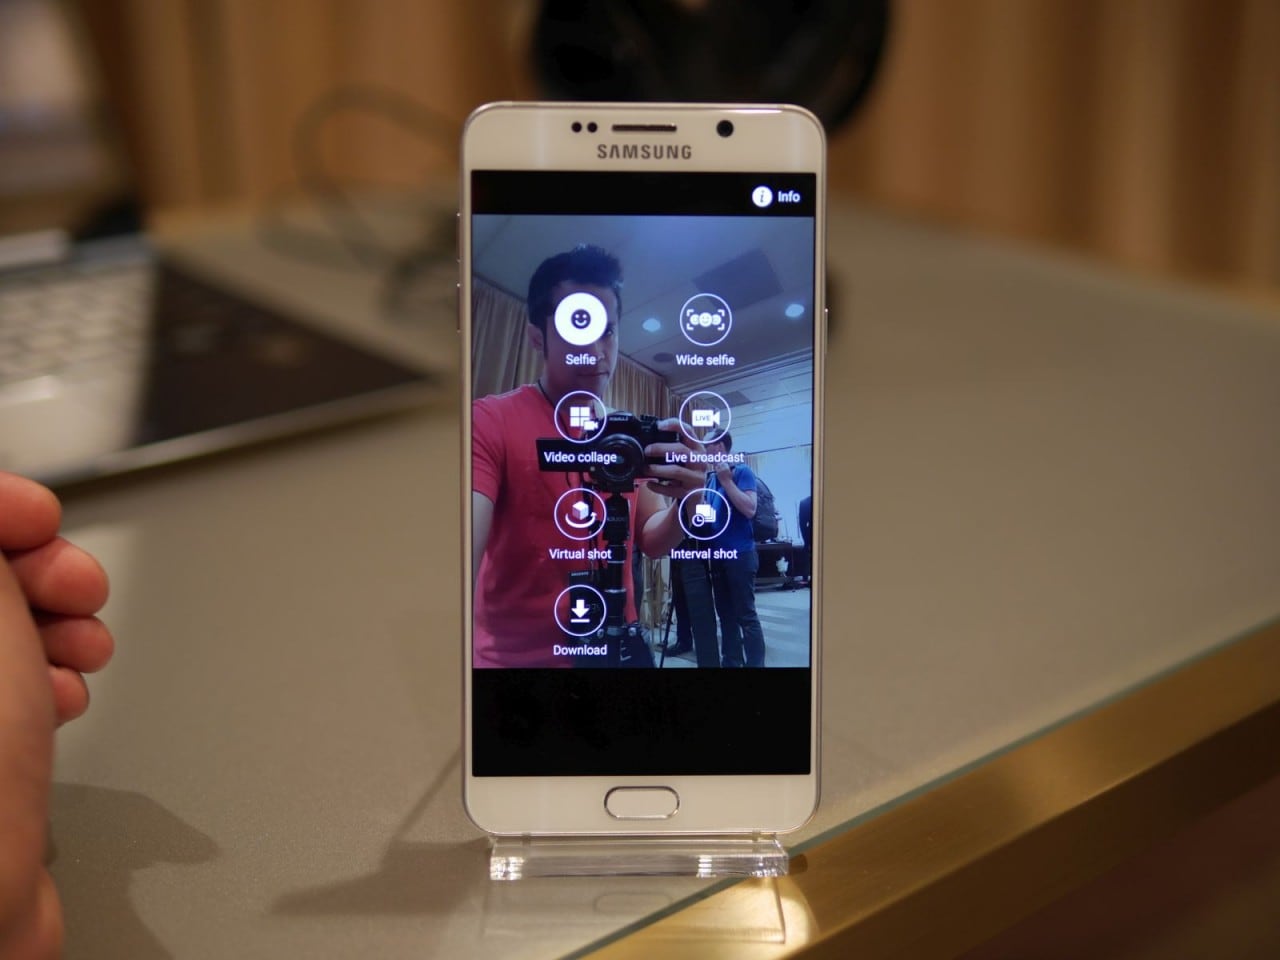 Sensore ISOCELL per Galaxy Note 5 ed S6 edge+